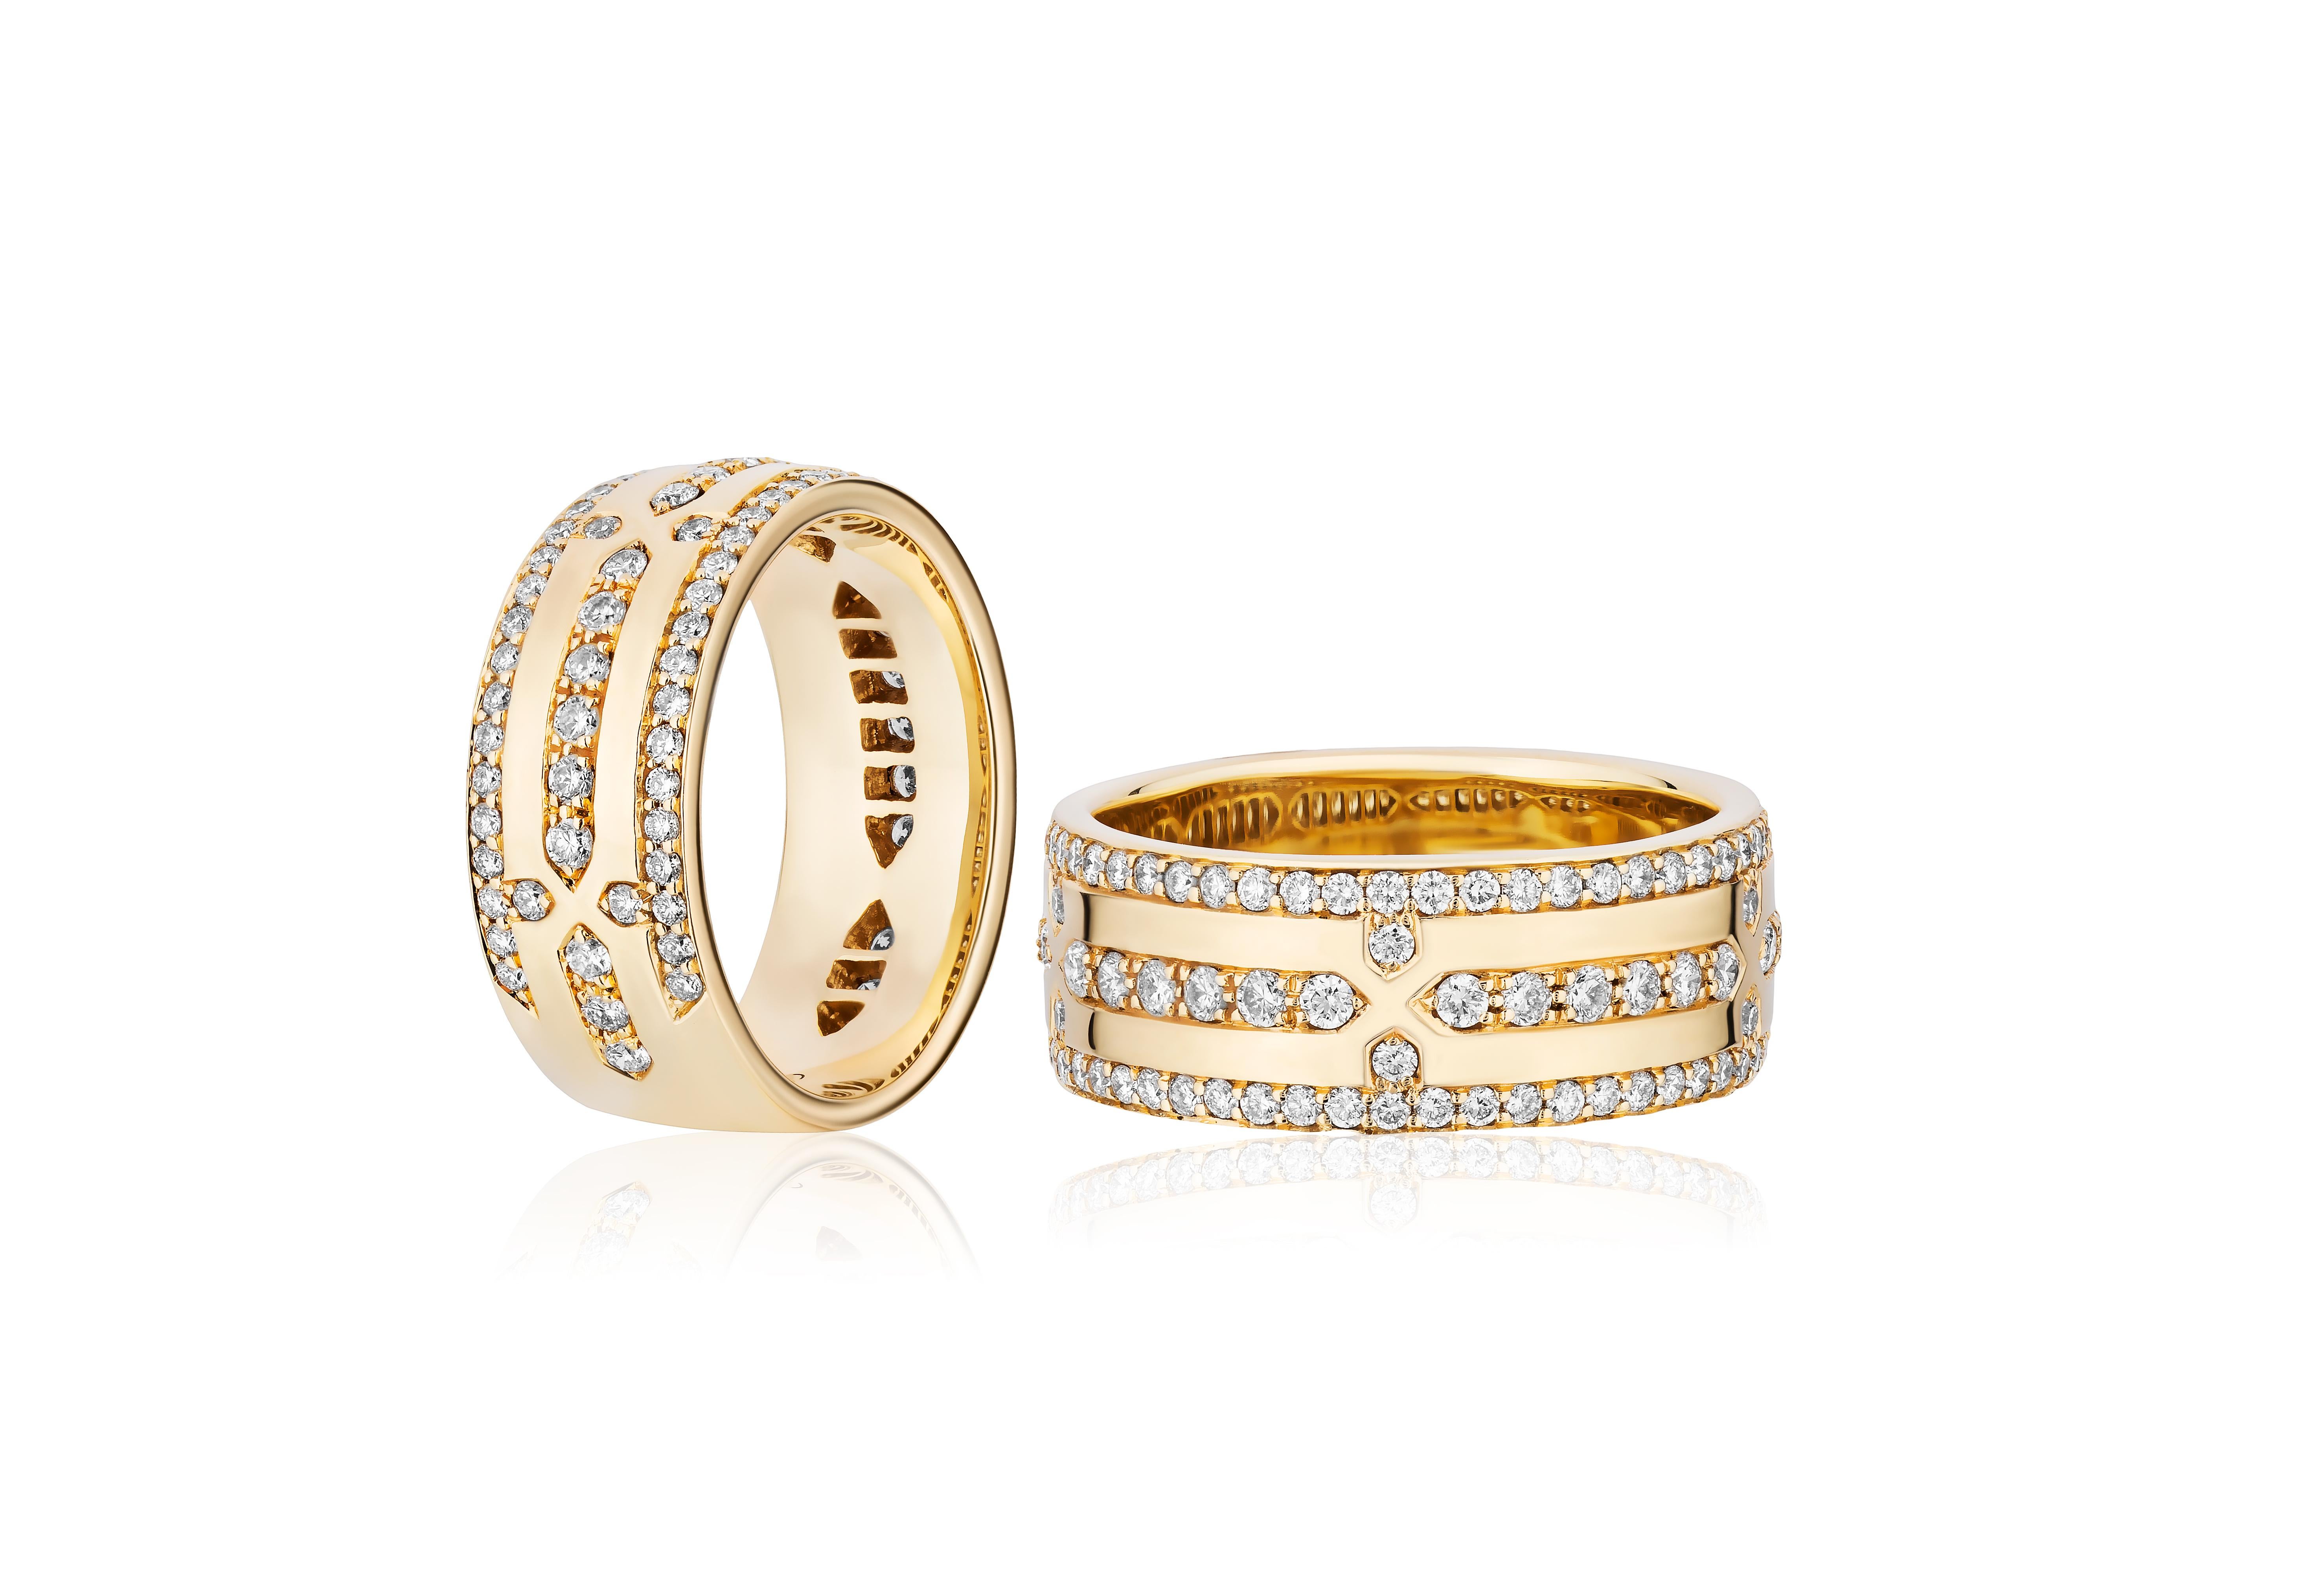 Ce bracelet large en or et diamants de la Collection 'G-Classics' est un bijou luxueux et attrayant en or jaune 18 carats. Ce large anneau est orné de diamants éblouissants et présente un design intemporel qui allie sans effort élégance et opulence.